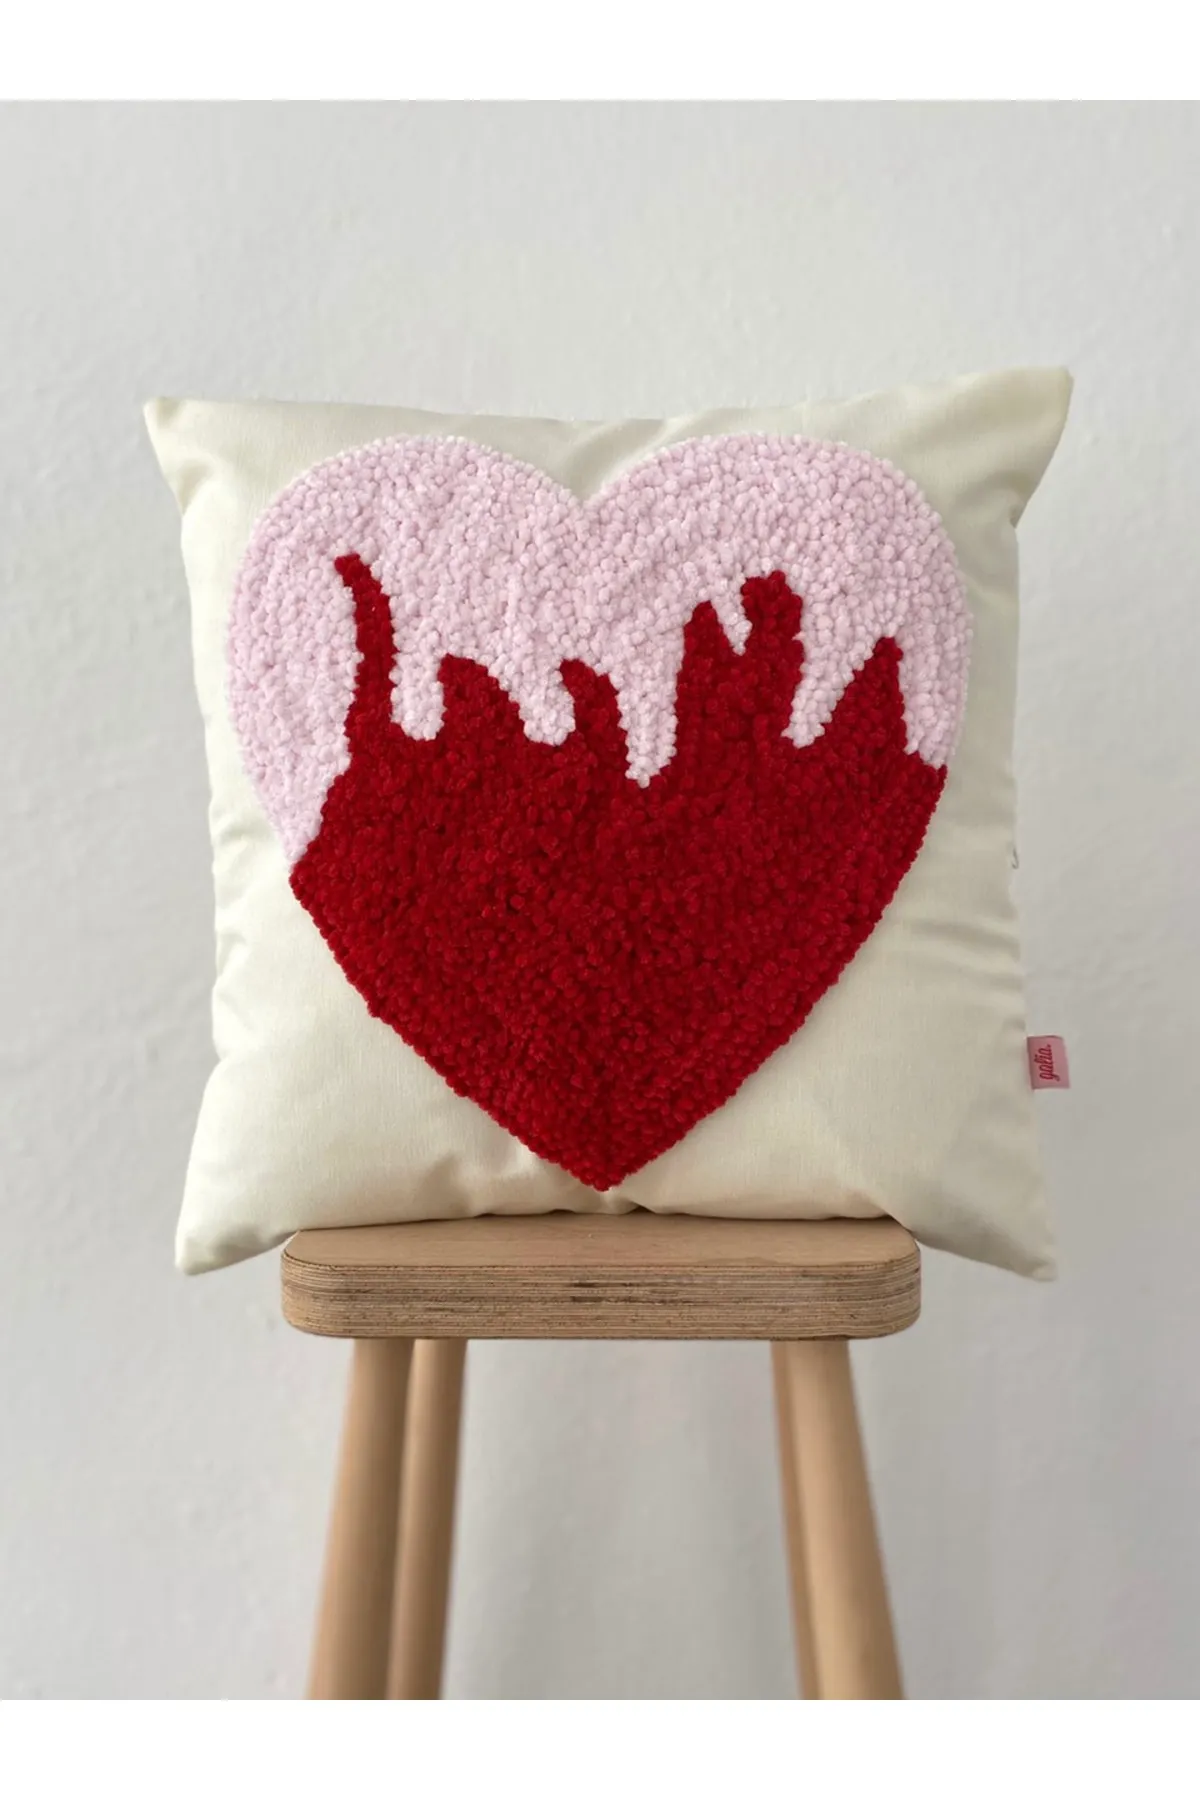 Velvet Heart Fire Spark Punch Cushion Pillow Cover